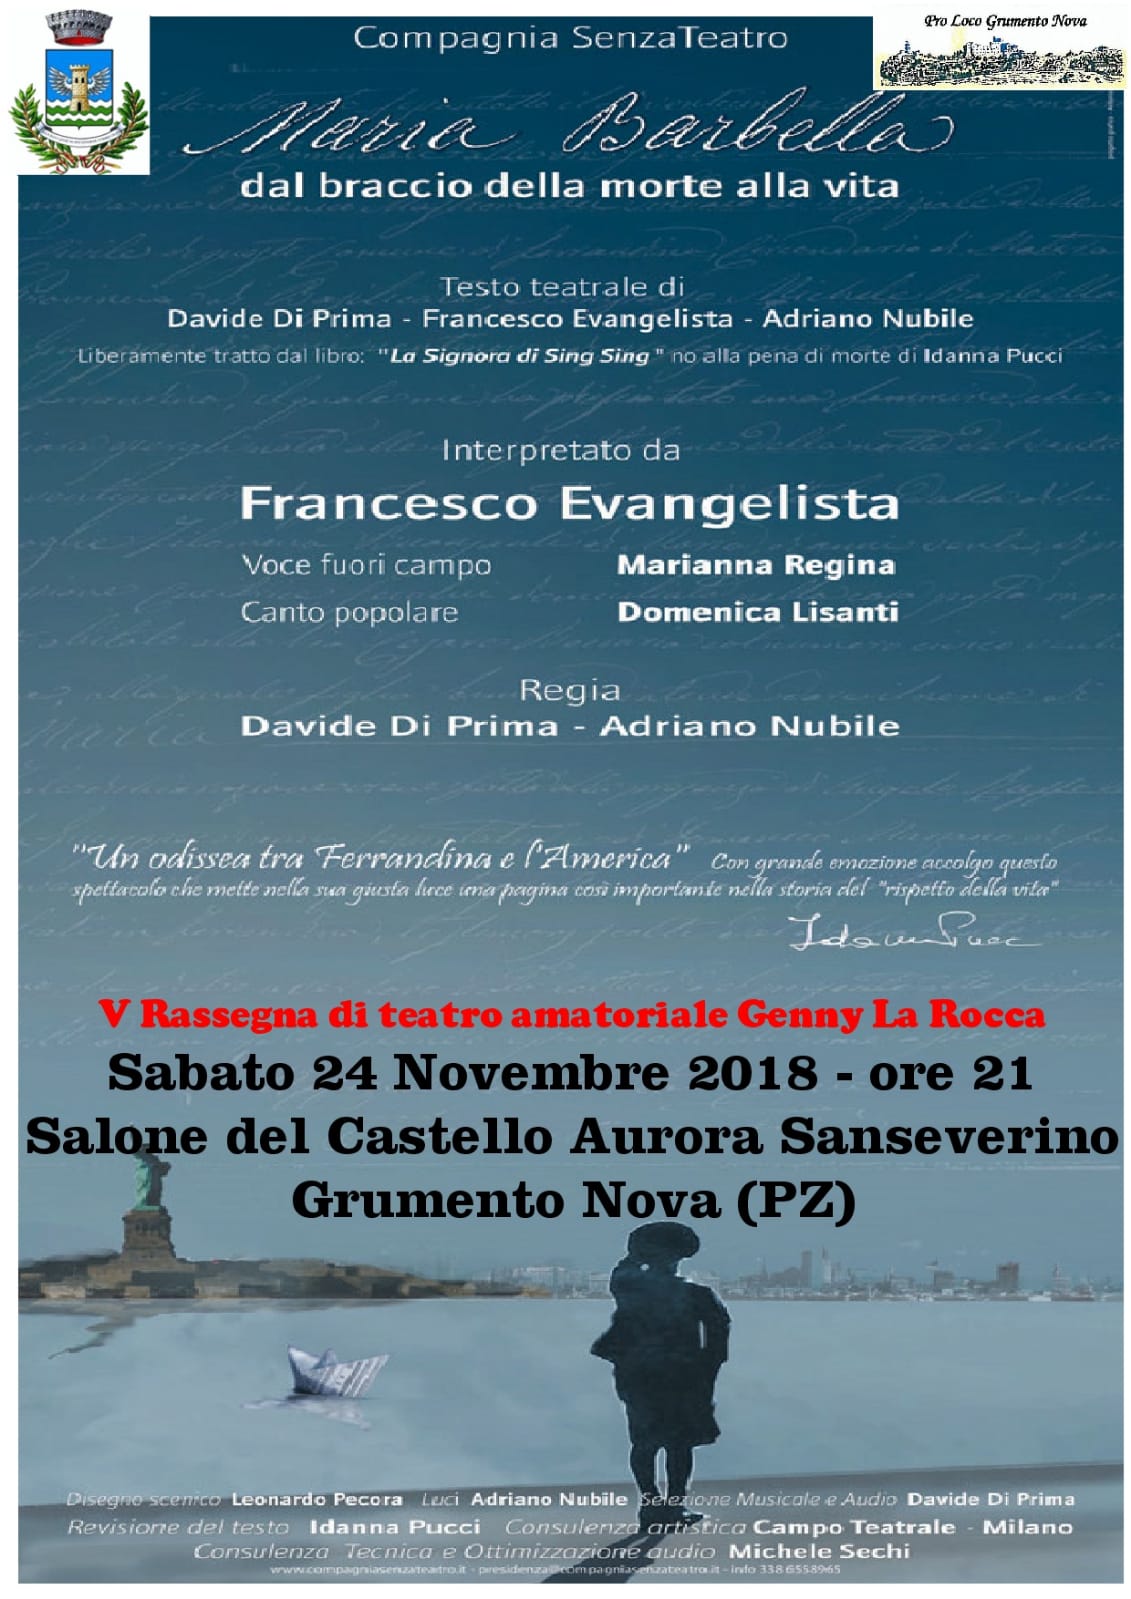 24 Novembre-2018 ore 21.00 Grumento Nova (PZ) V rassegna Teatro Genny La Rocca